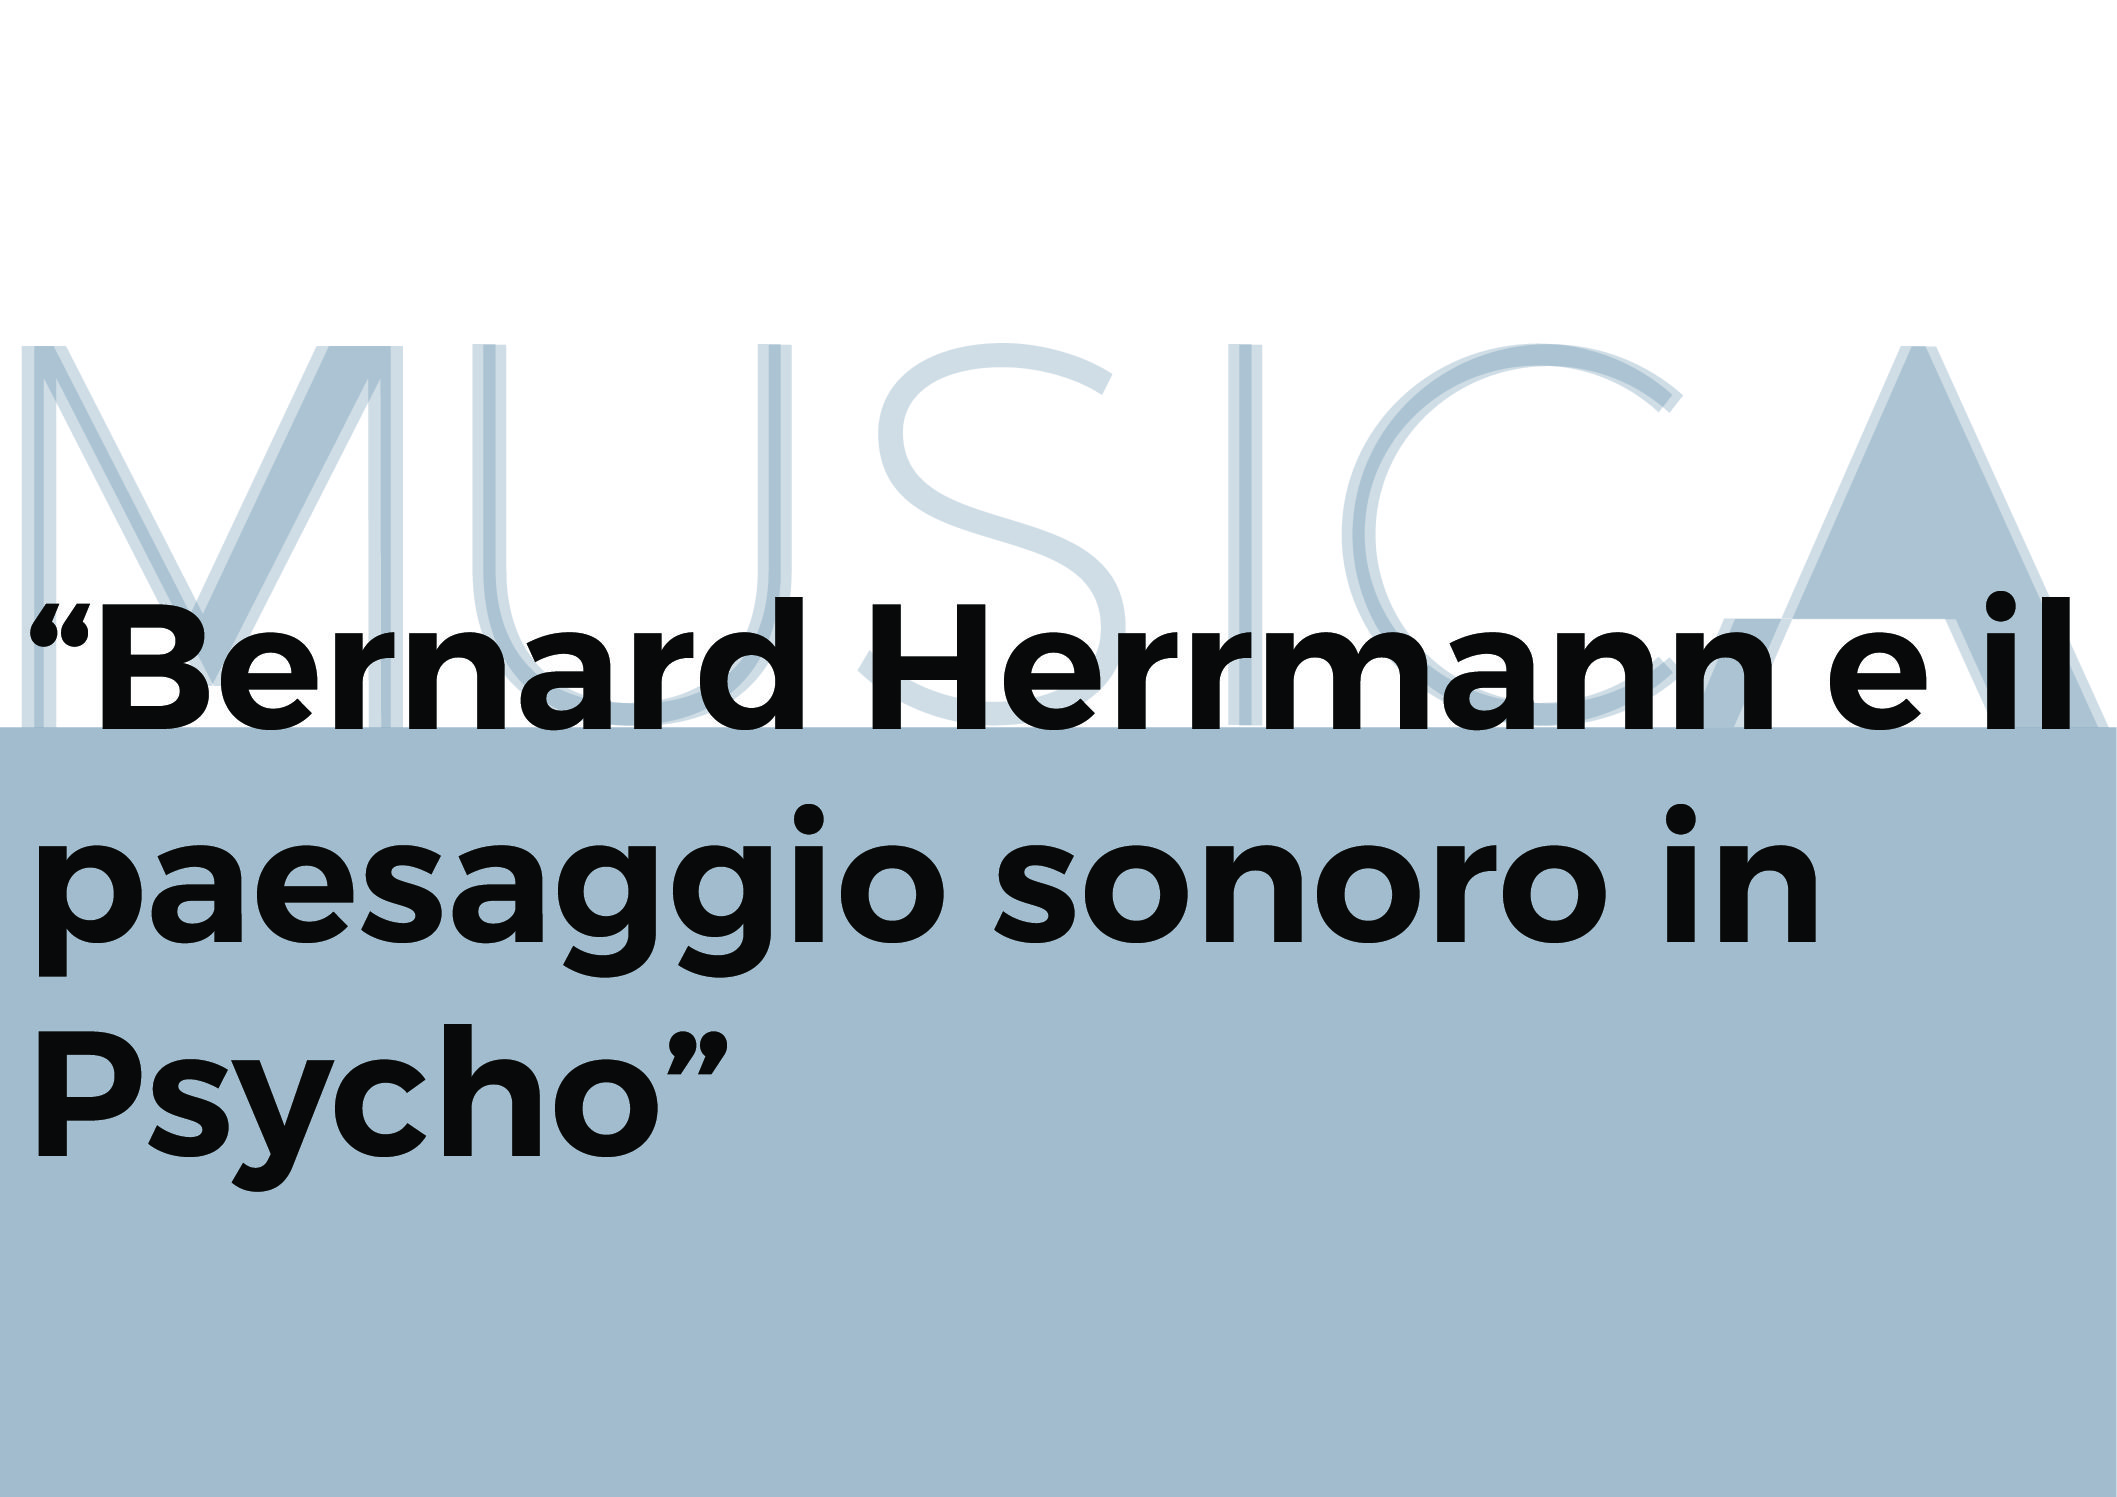 Bernard Herrmann e il paesaggio sonoro in Psycho – immagine